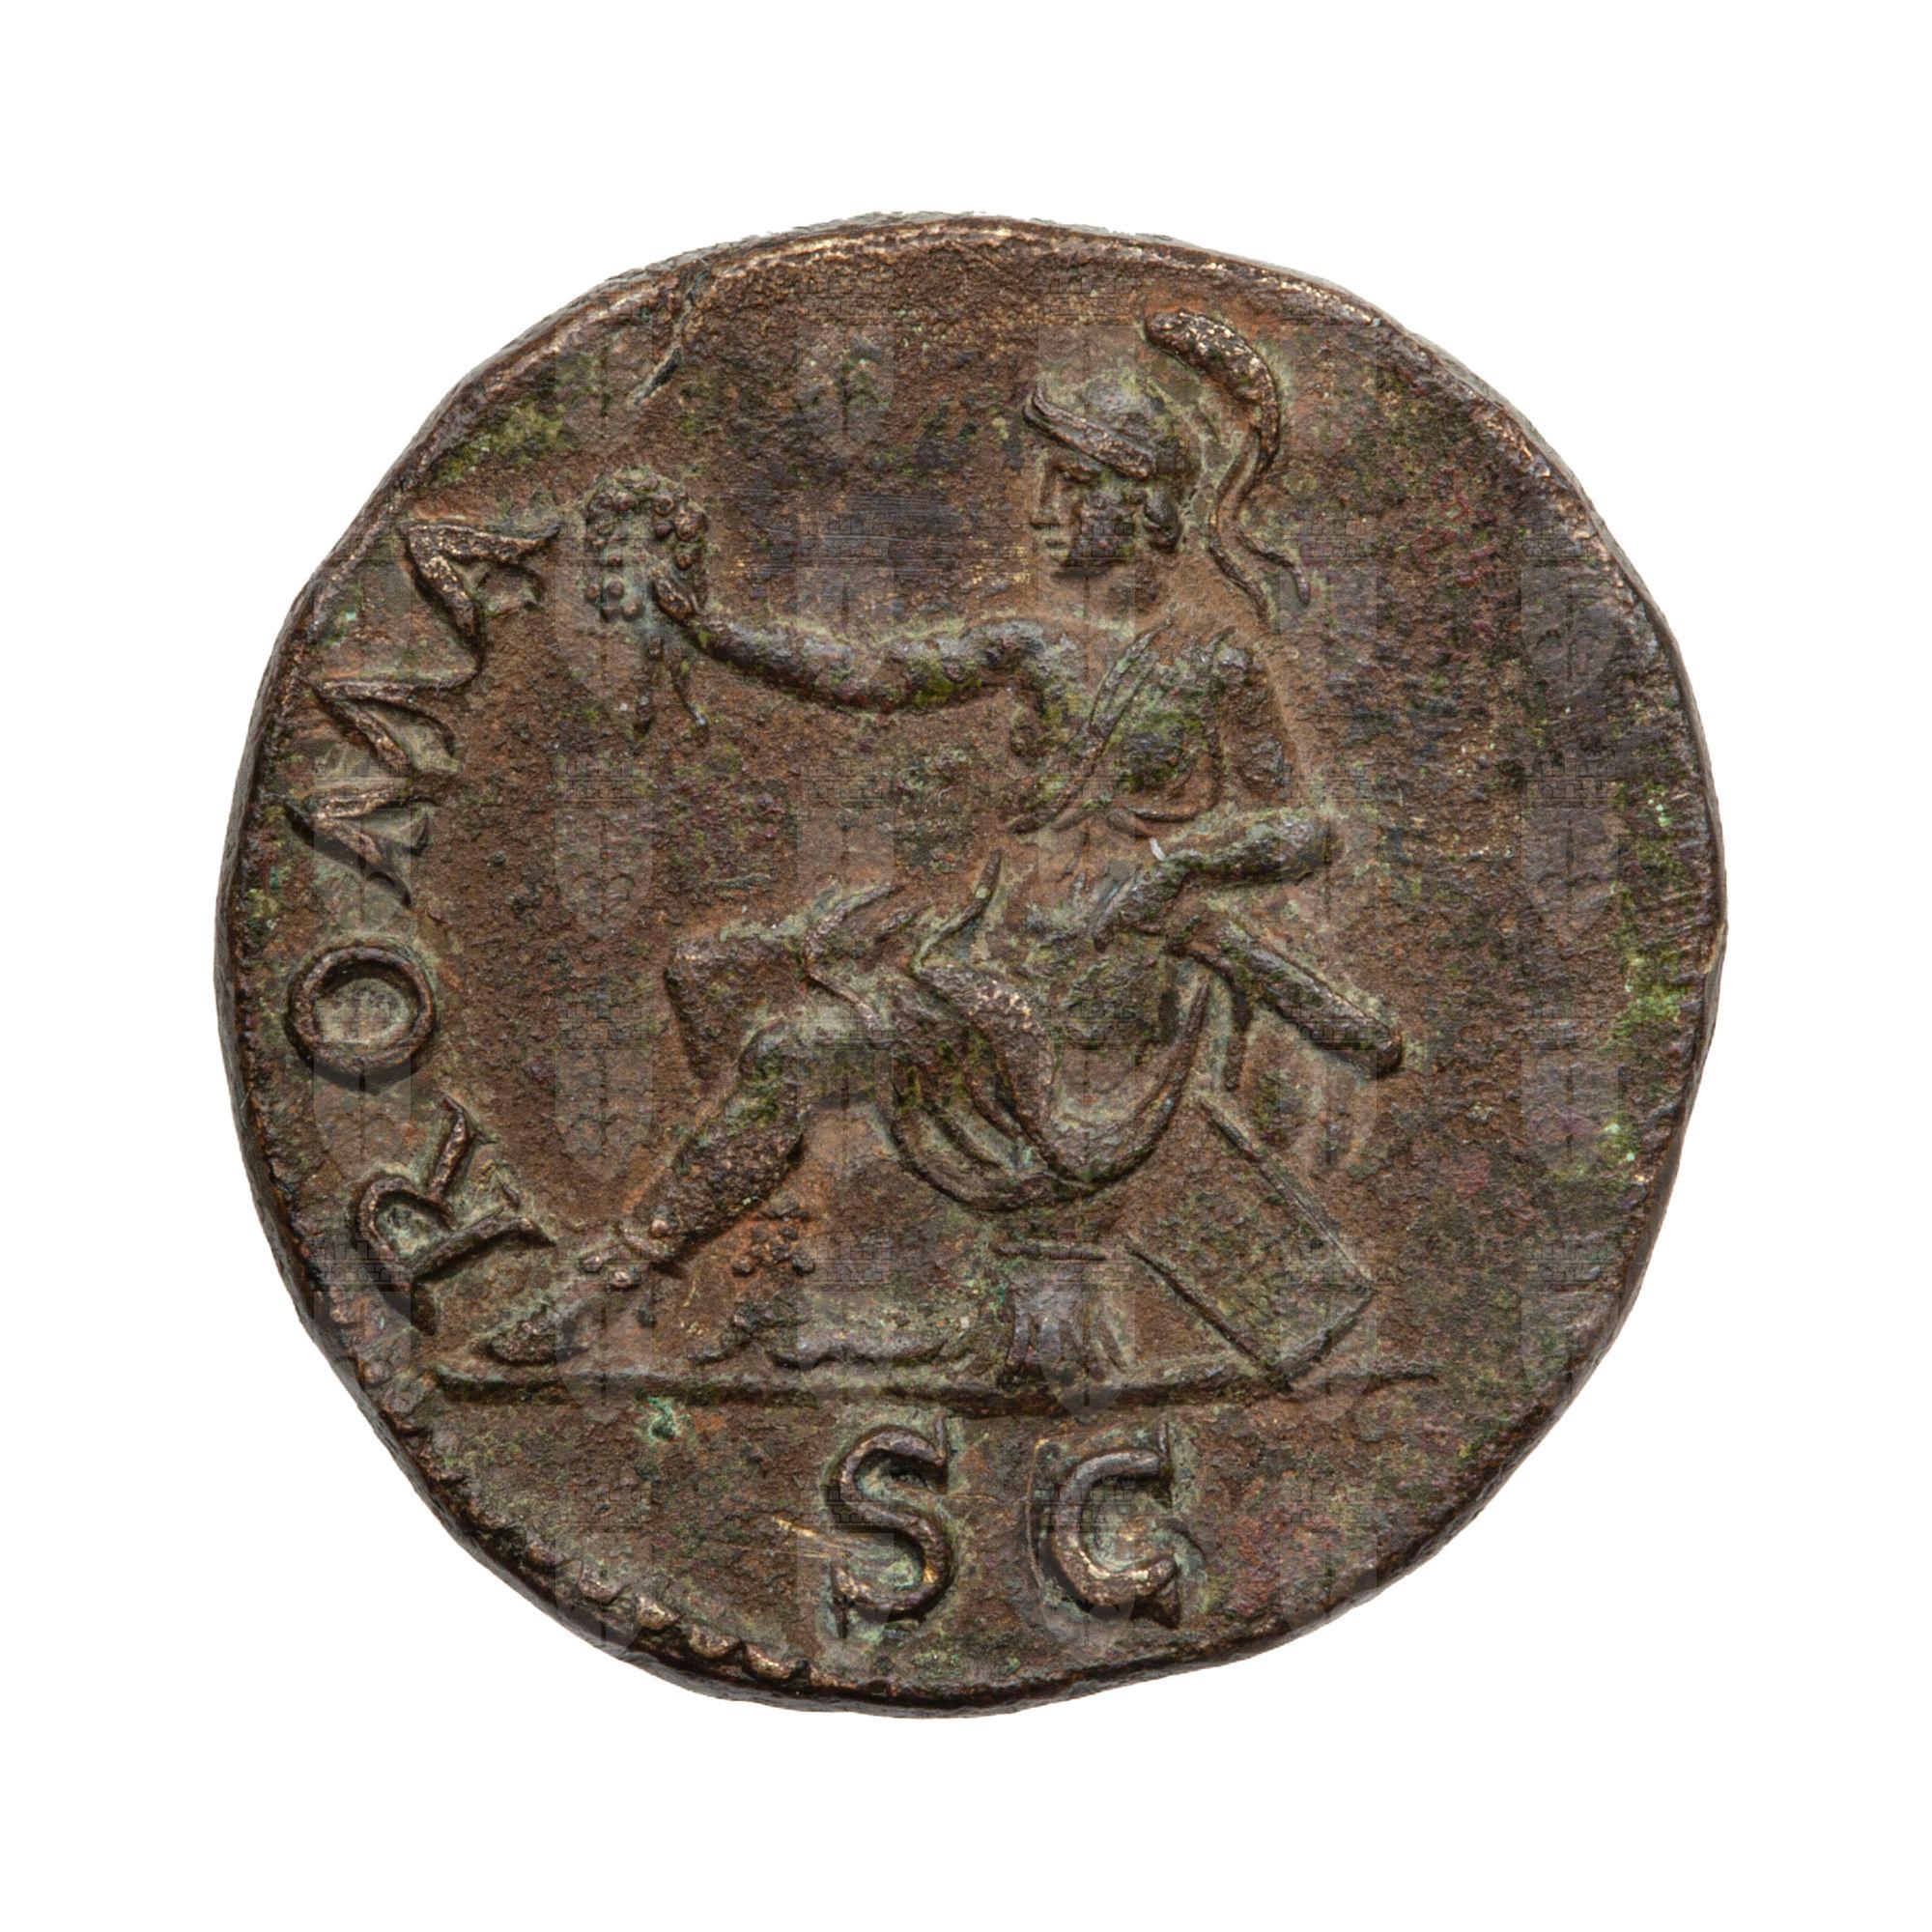 https://catalogomusei.comune.trieste.it/samira/resource/image/reperti-archeologici/Roma 219a R Vespasiano.jpg?token=65e6c7b688a9a